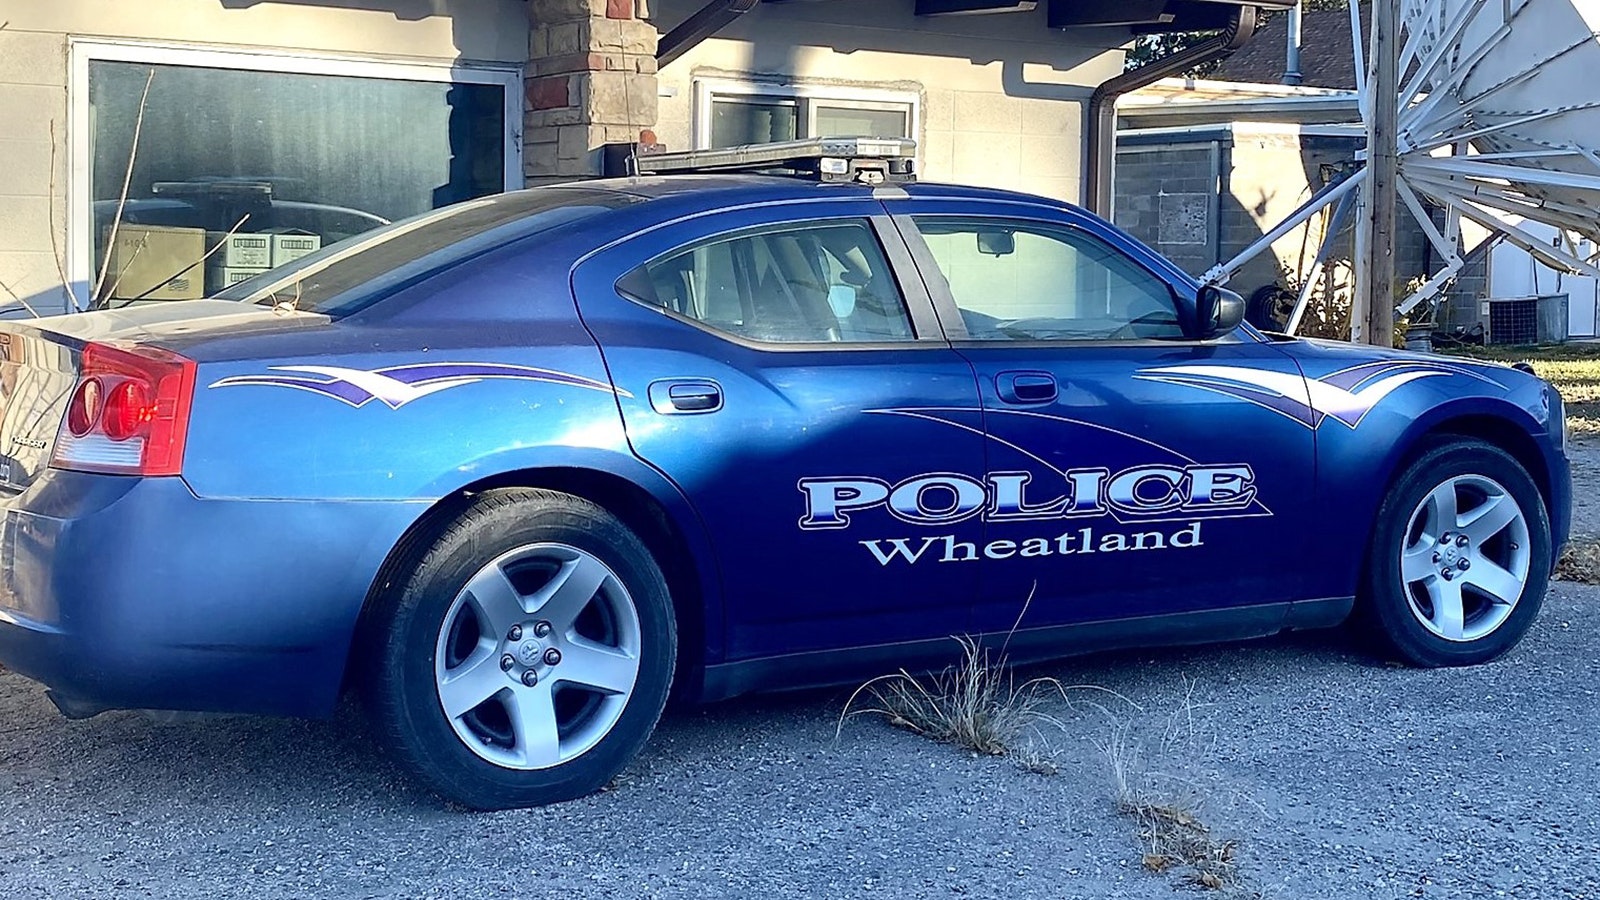 Wheatland police car 3 4 24